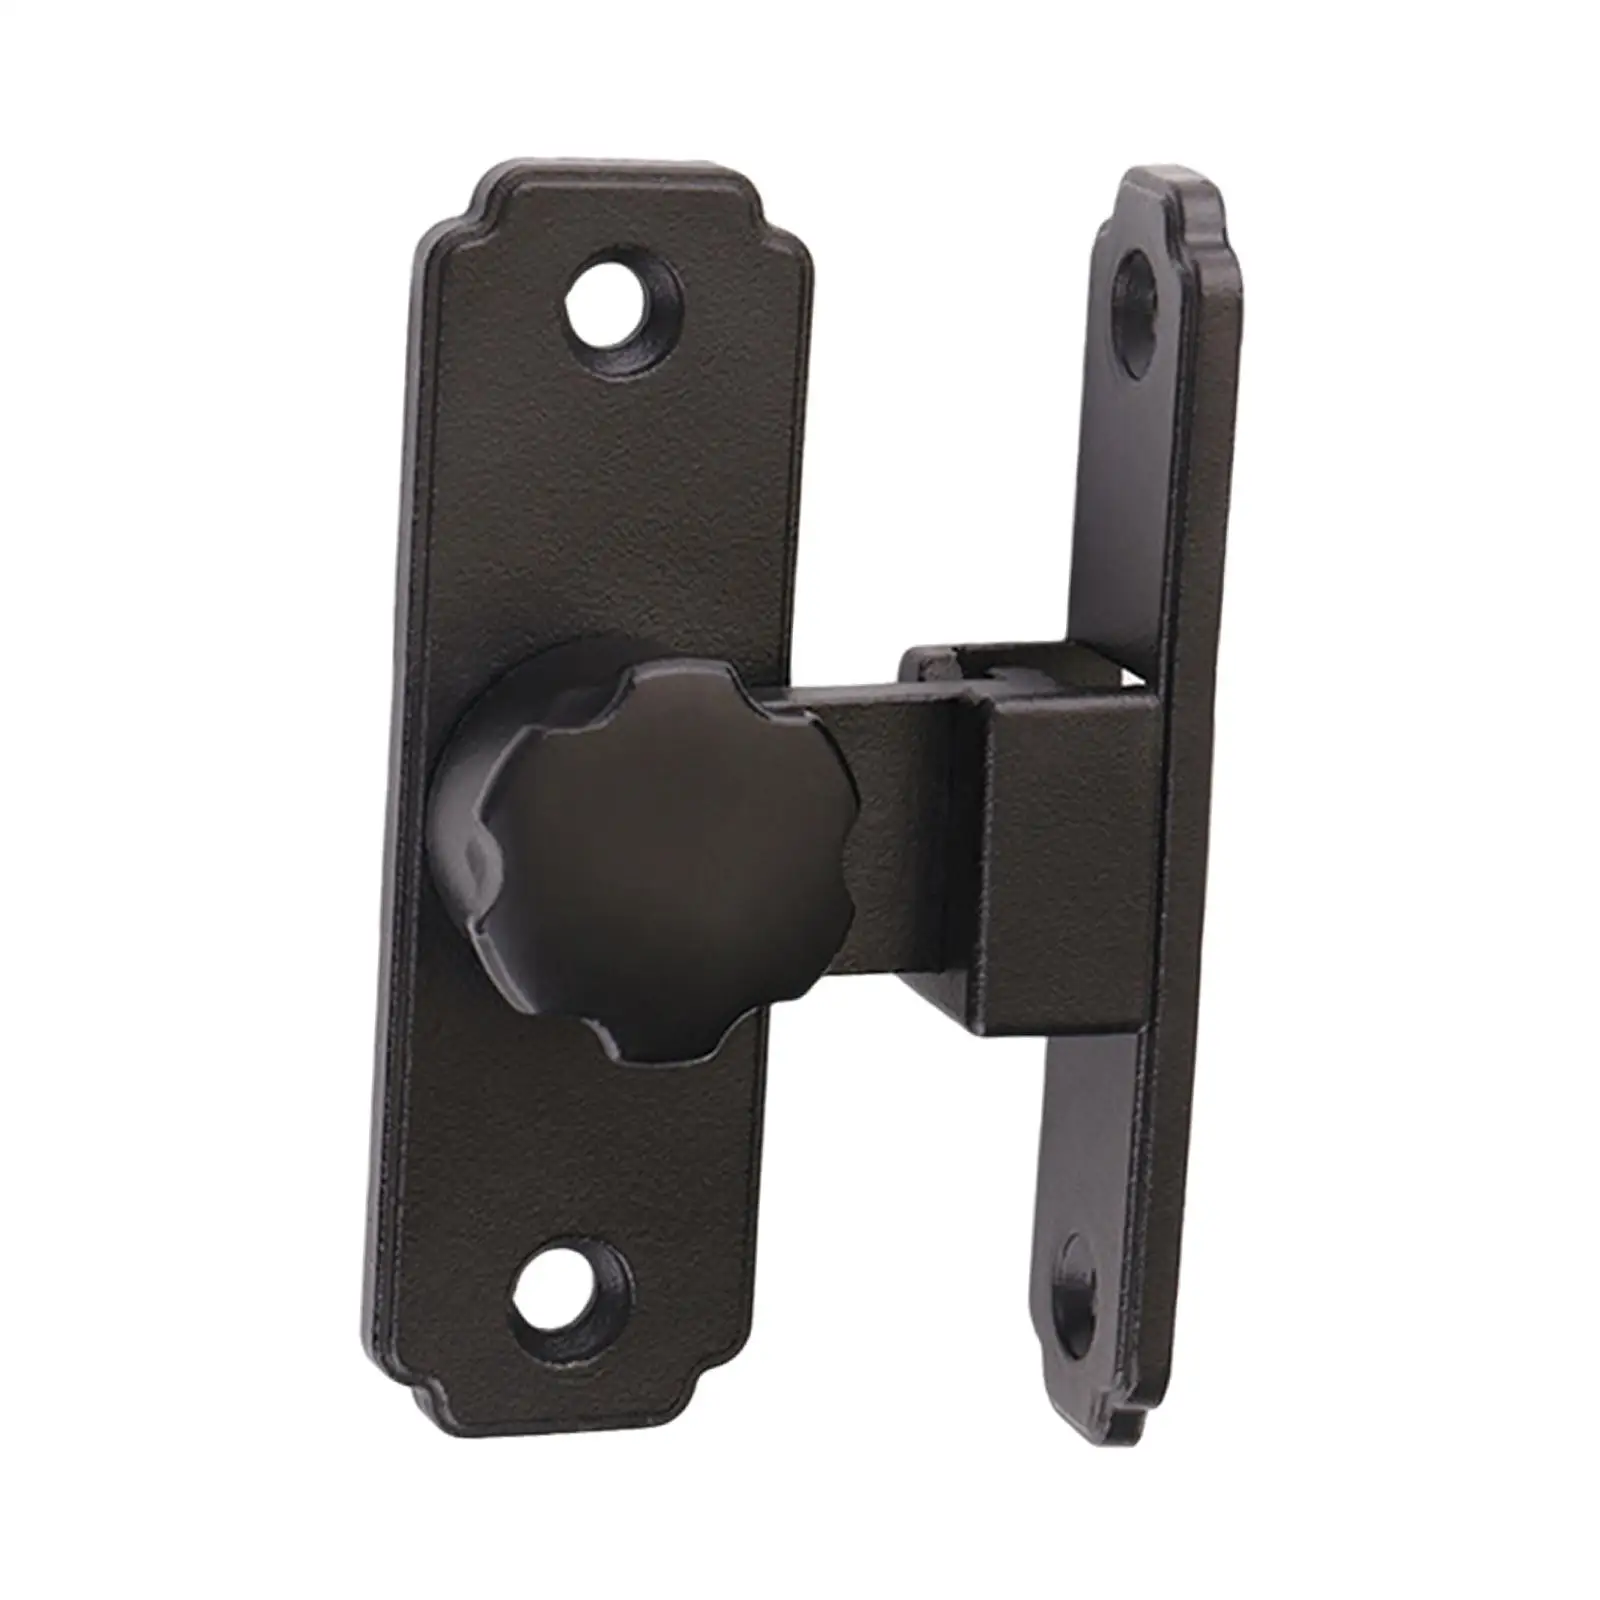 Sliding Door Lock Lever Lock Heavy Duty with Screws Durable Hardware Front Door Locks for Bathroom Entrance Garage Home Window